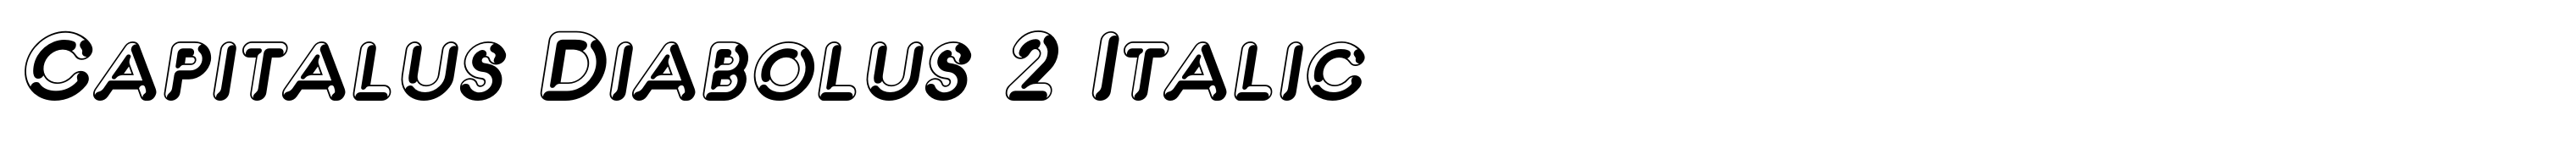 Capitalus Diabolus 2 Italic